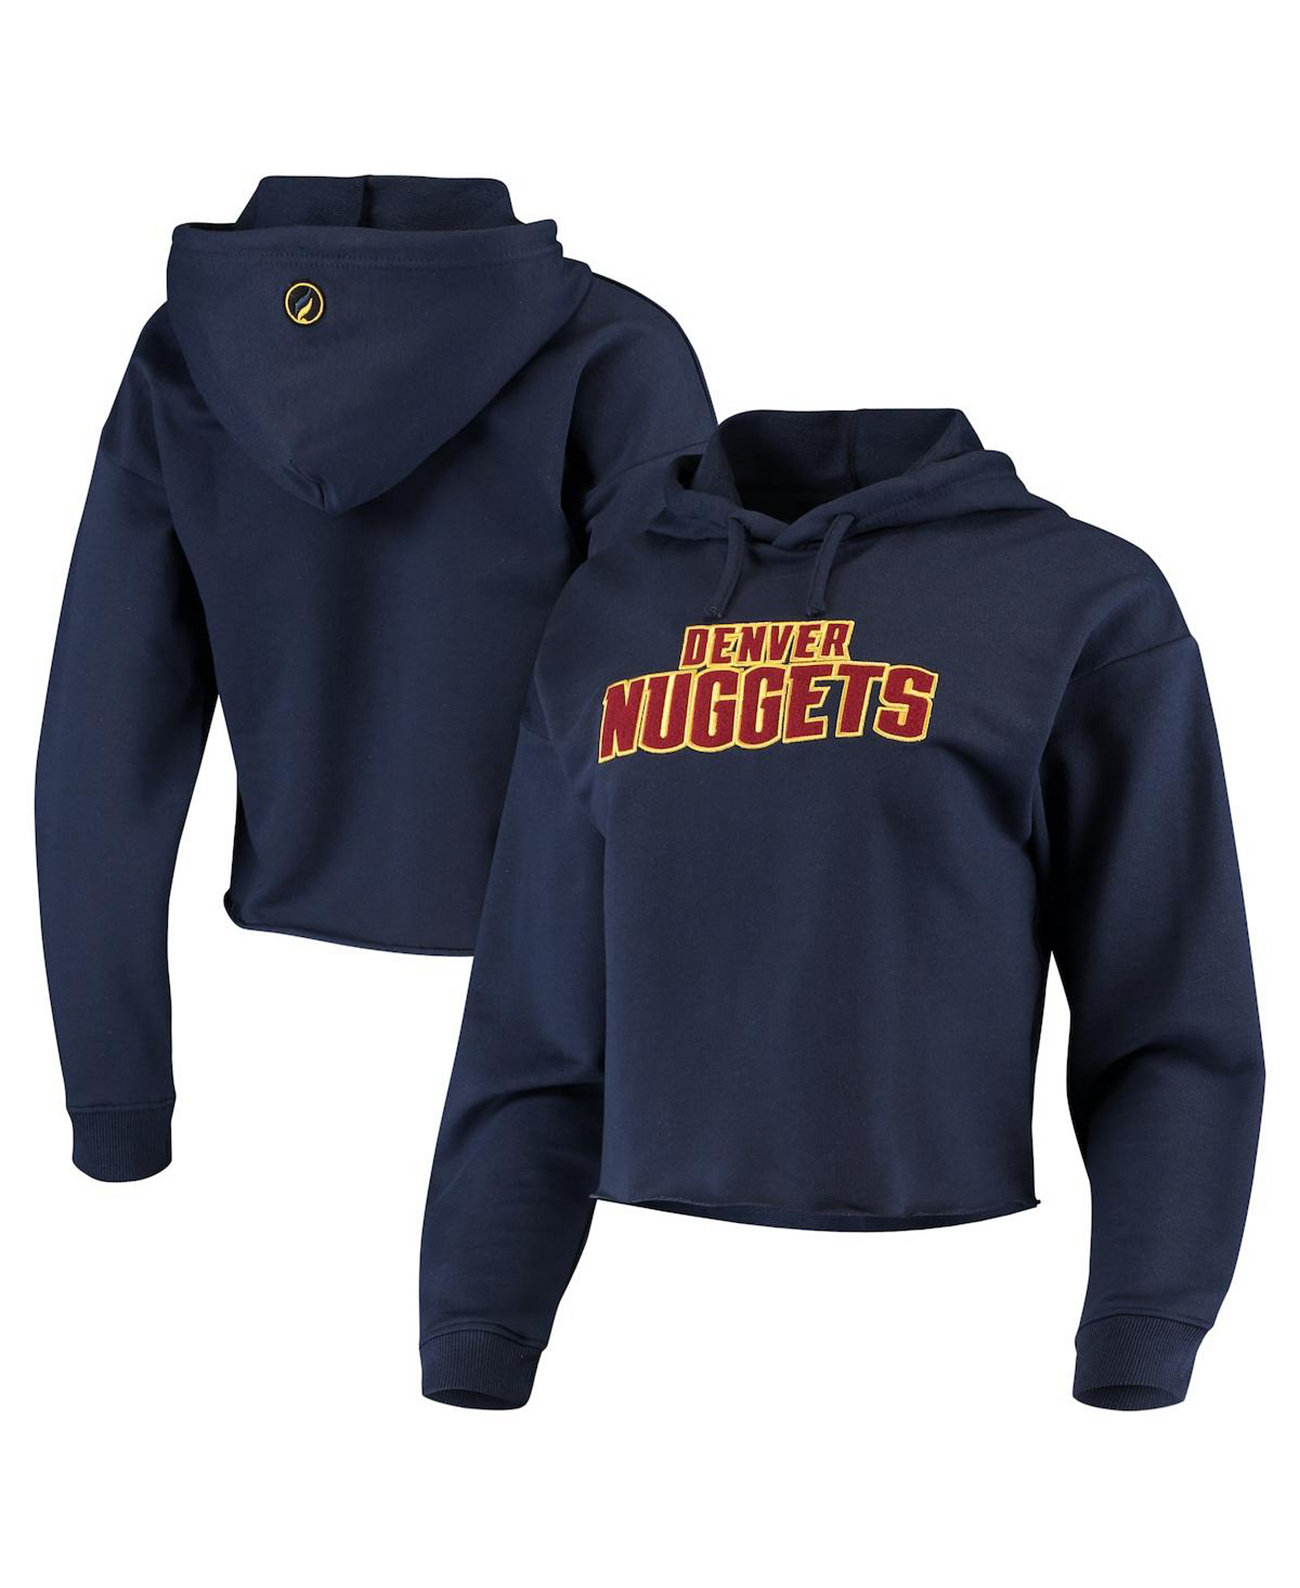 Укороченный пуловер с капюшоном с логотипом Denver Nuggets для женщин темно-синего цвета FISLL